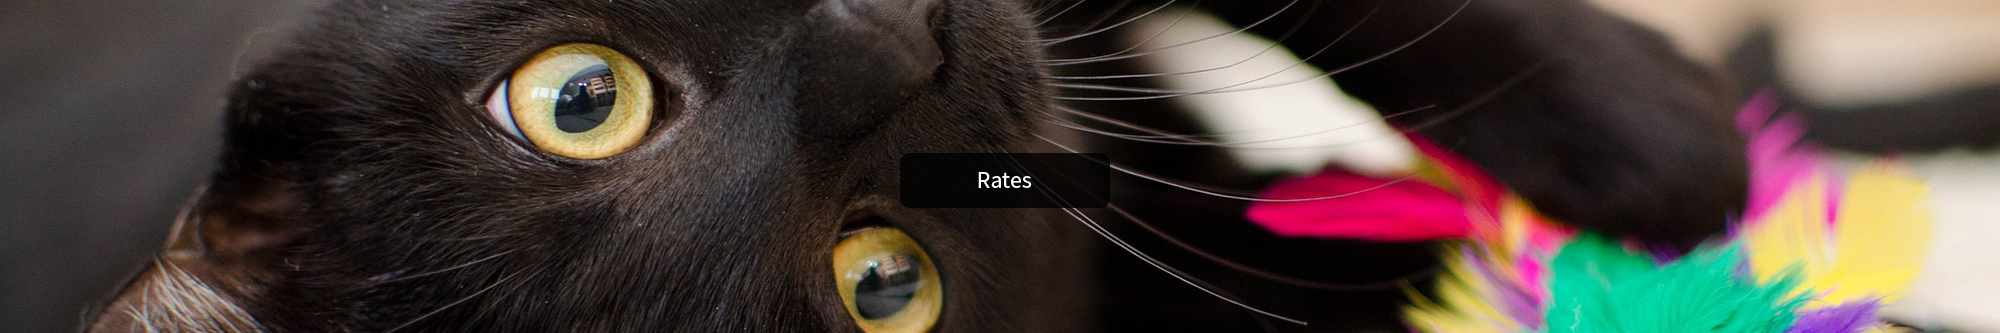 Rates - Catnaps Hotel - cat boarding Buffalo NY